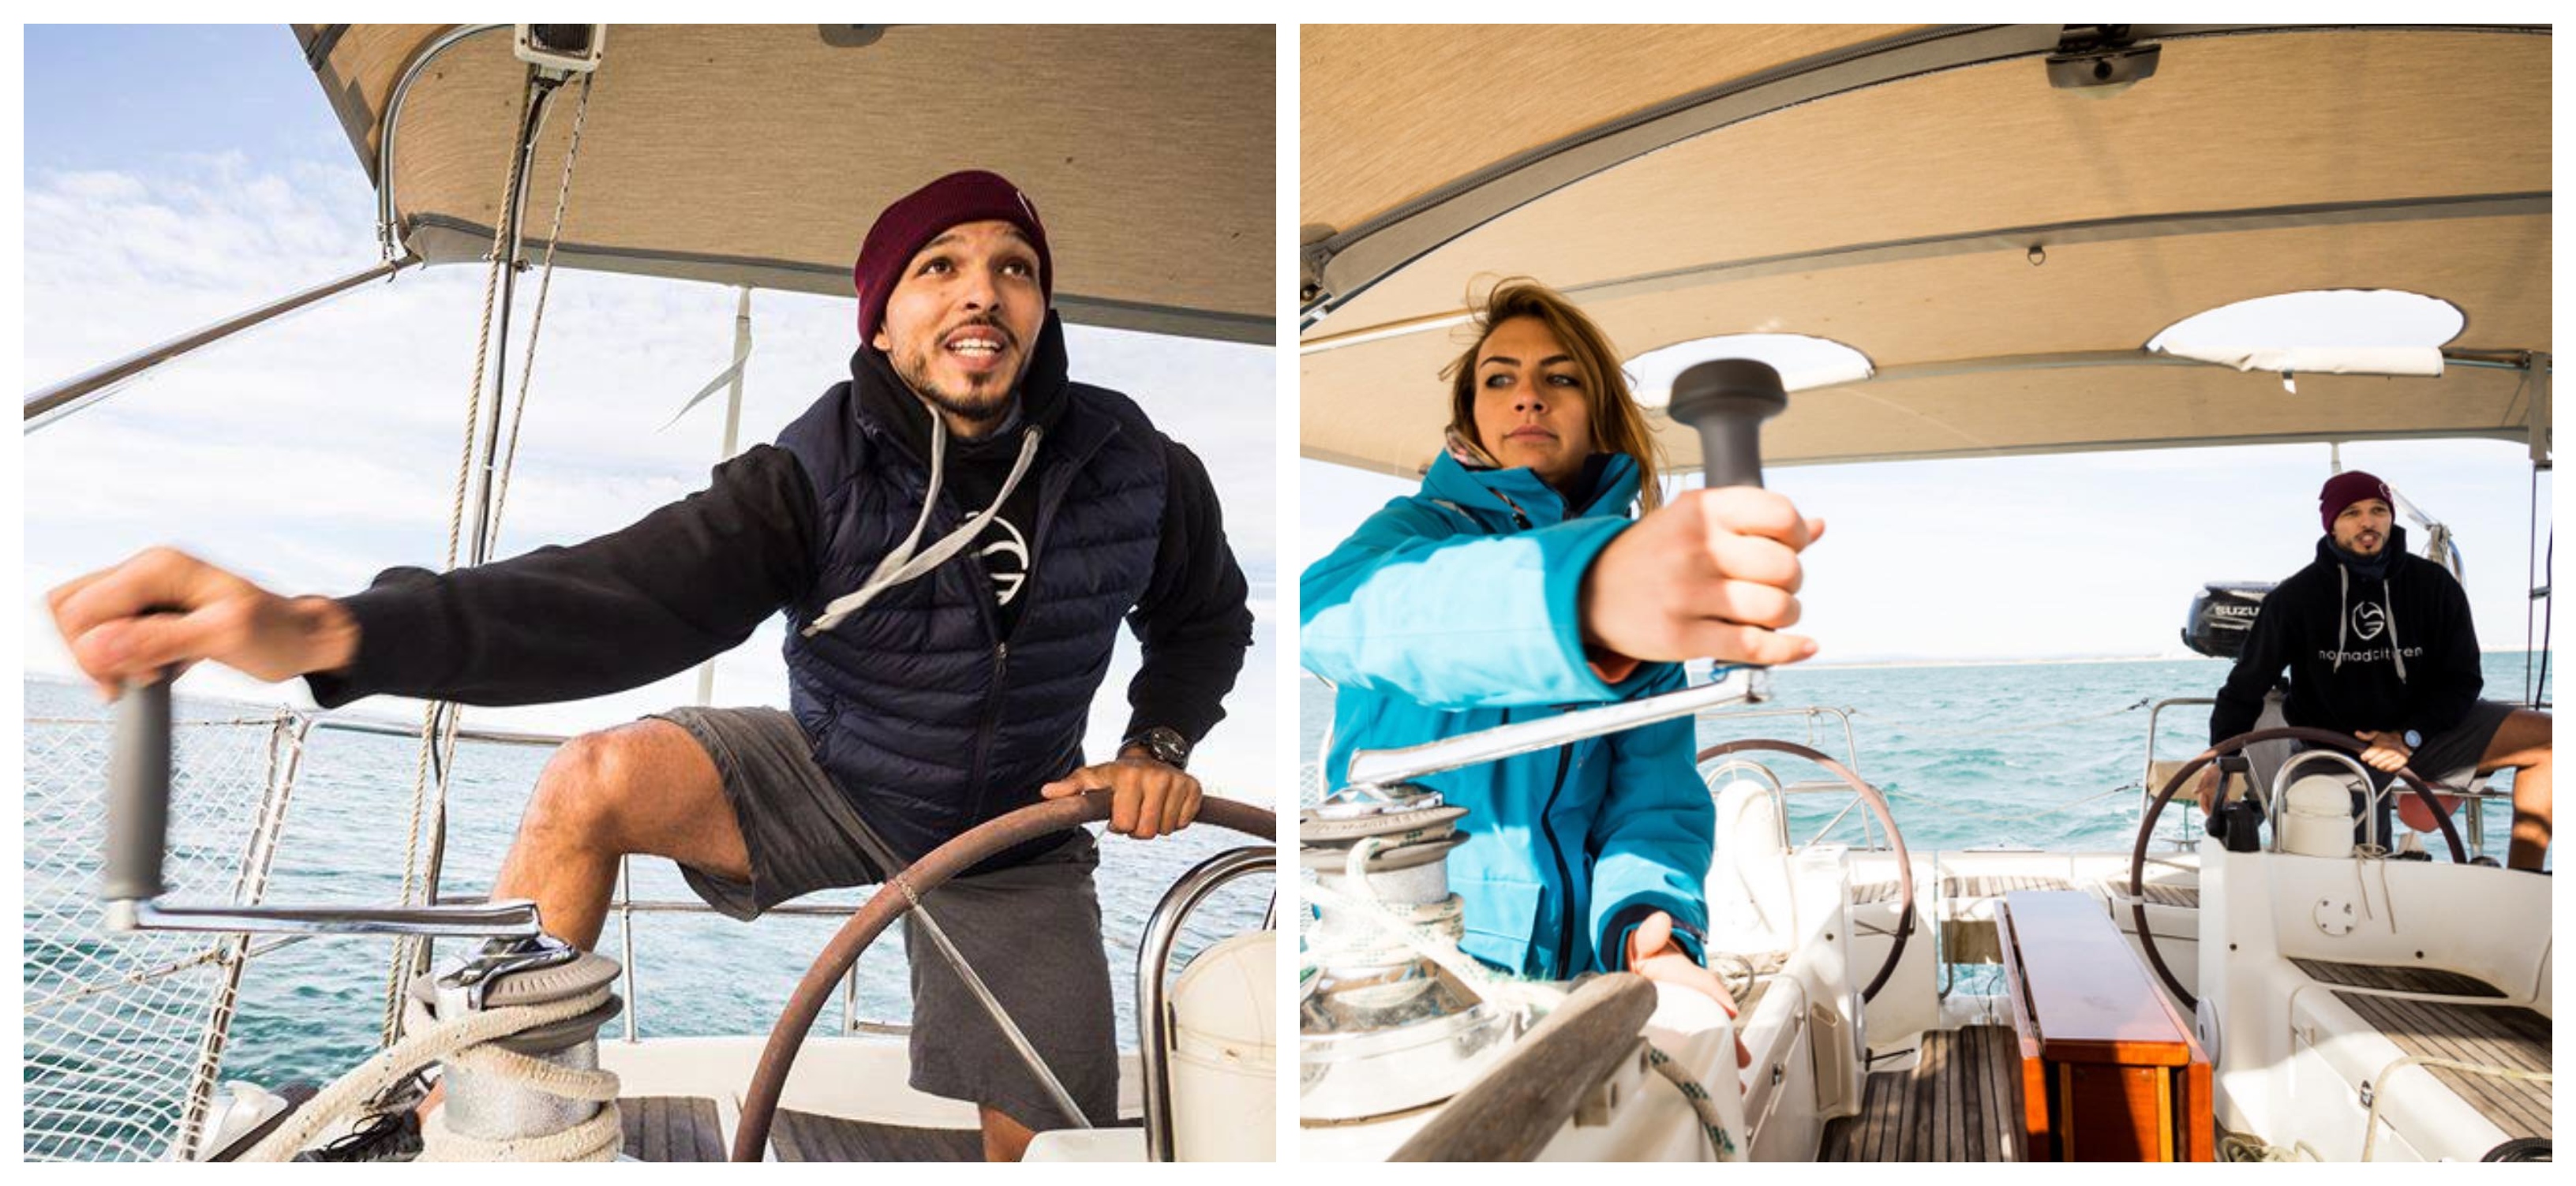  Marvi et Dani en train de faire des manoeuvres sur le voilier, Photo: Sailing Nomad Citizen 